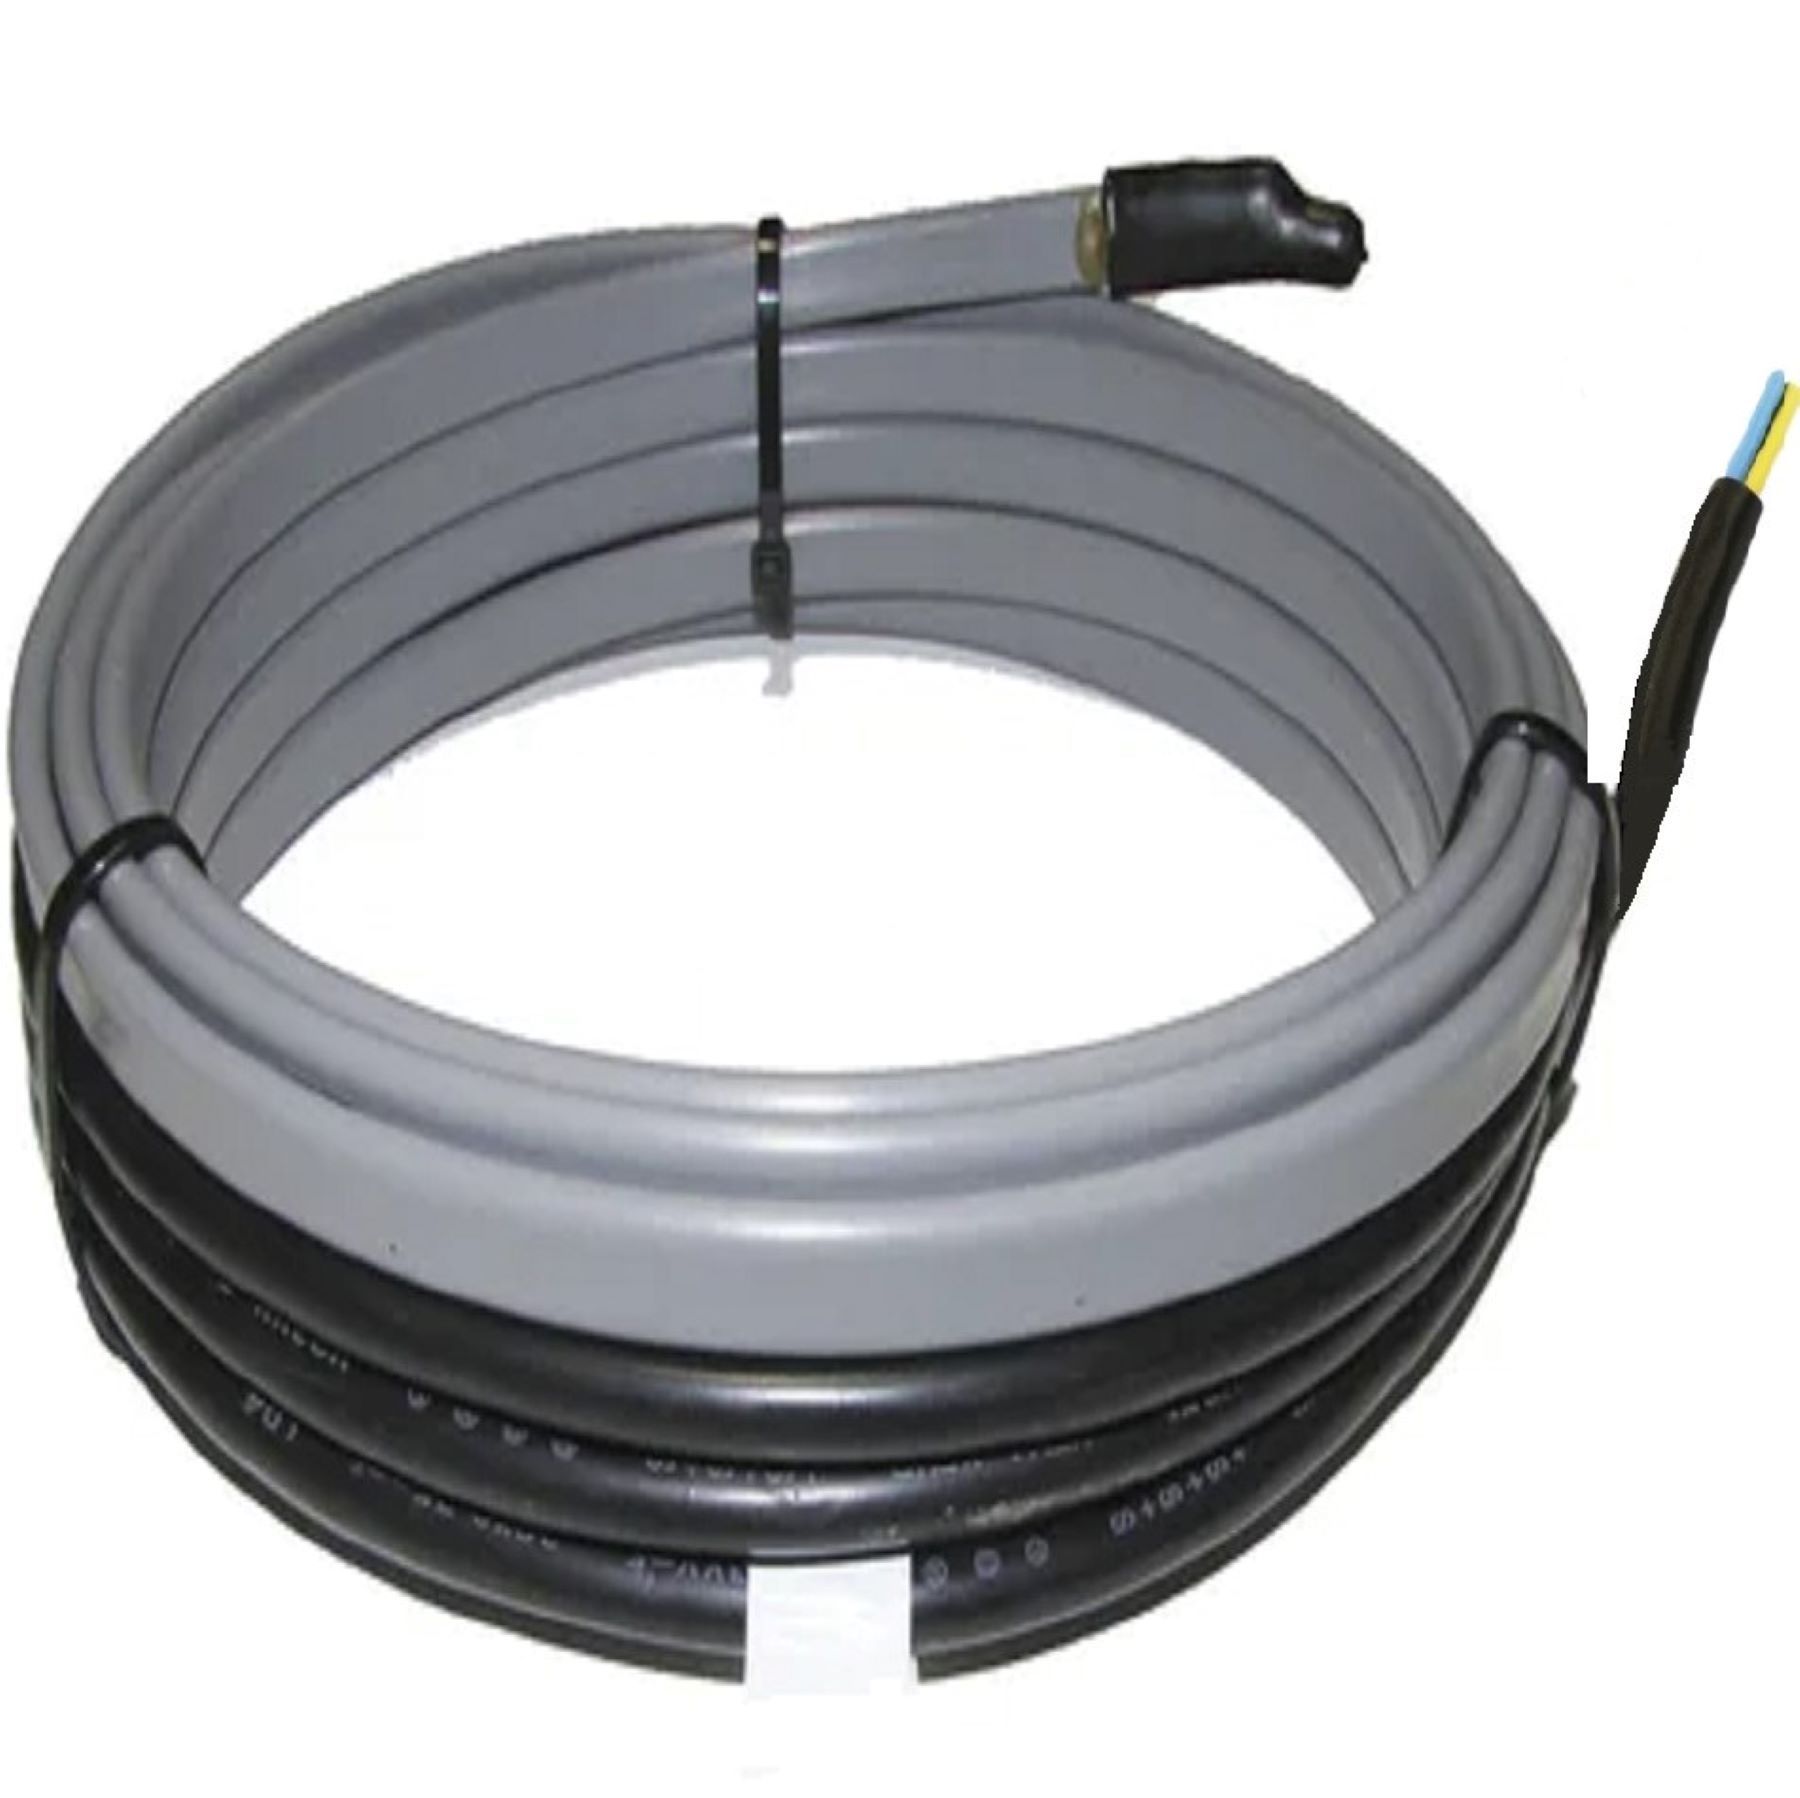 Купить кабель для обогрева труб. Тёплый кабель для труб SRL - 16-2. Секция нагревательная кабельная СМБЗ(25нтр2-Вт)-0560-050-1-09. Секция нагревательная ССБЭ. Греющий кабель Sun Power 192вт.